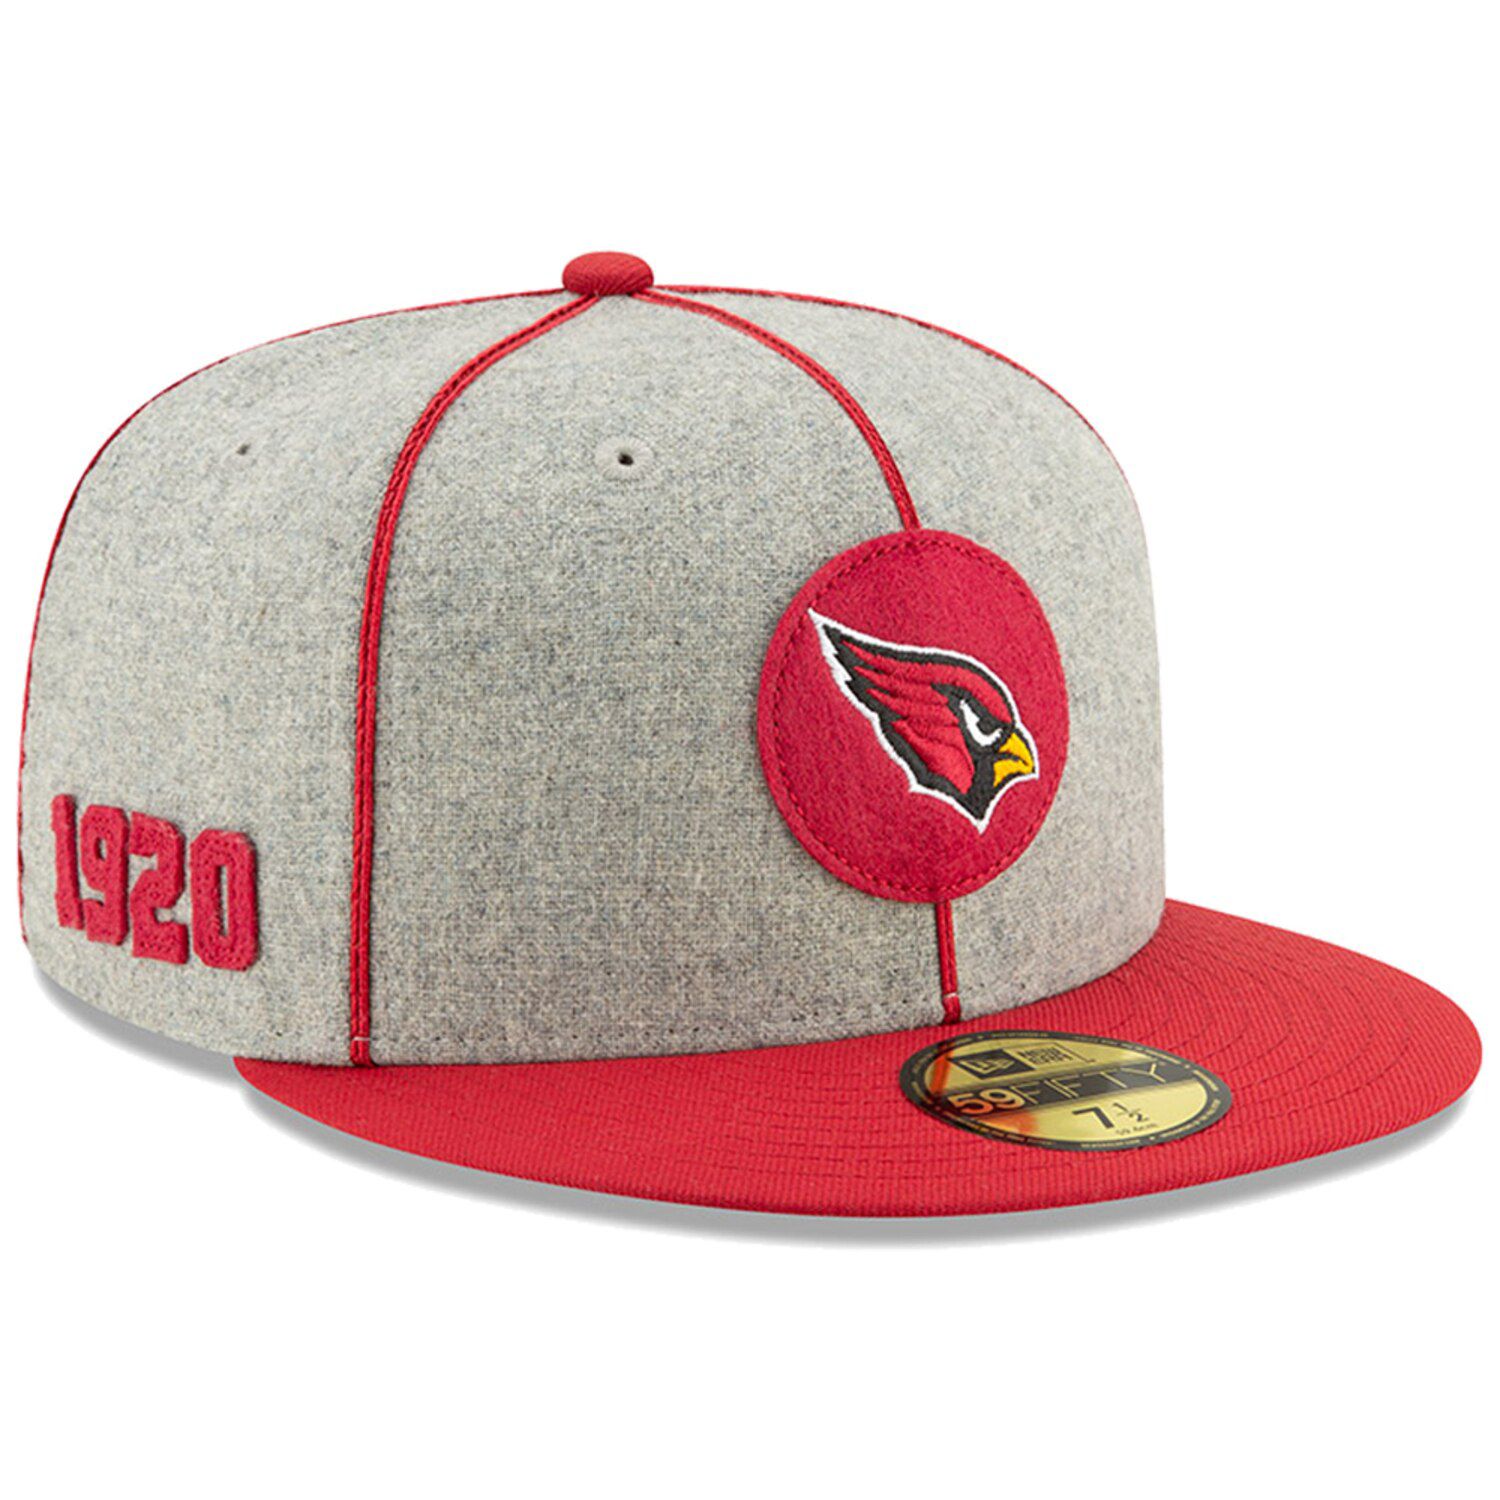 nfl cardinals hat